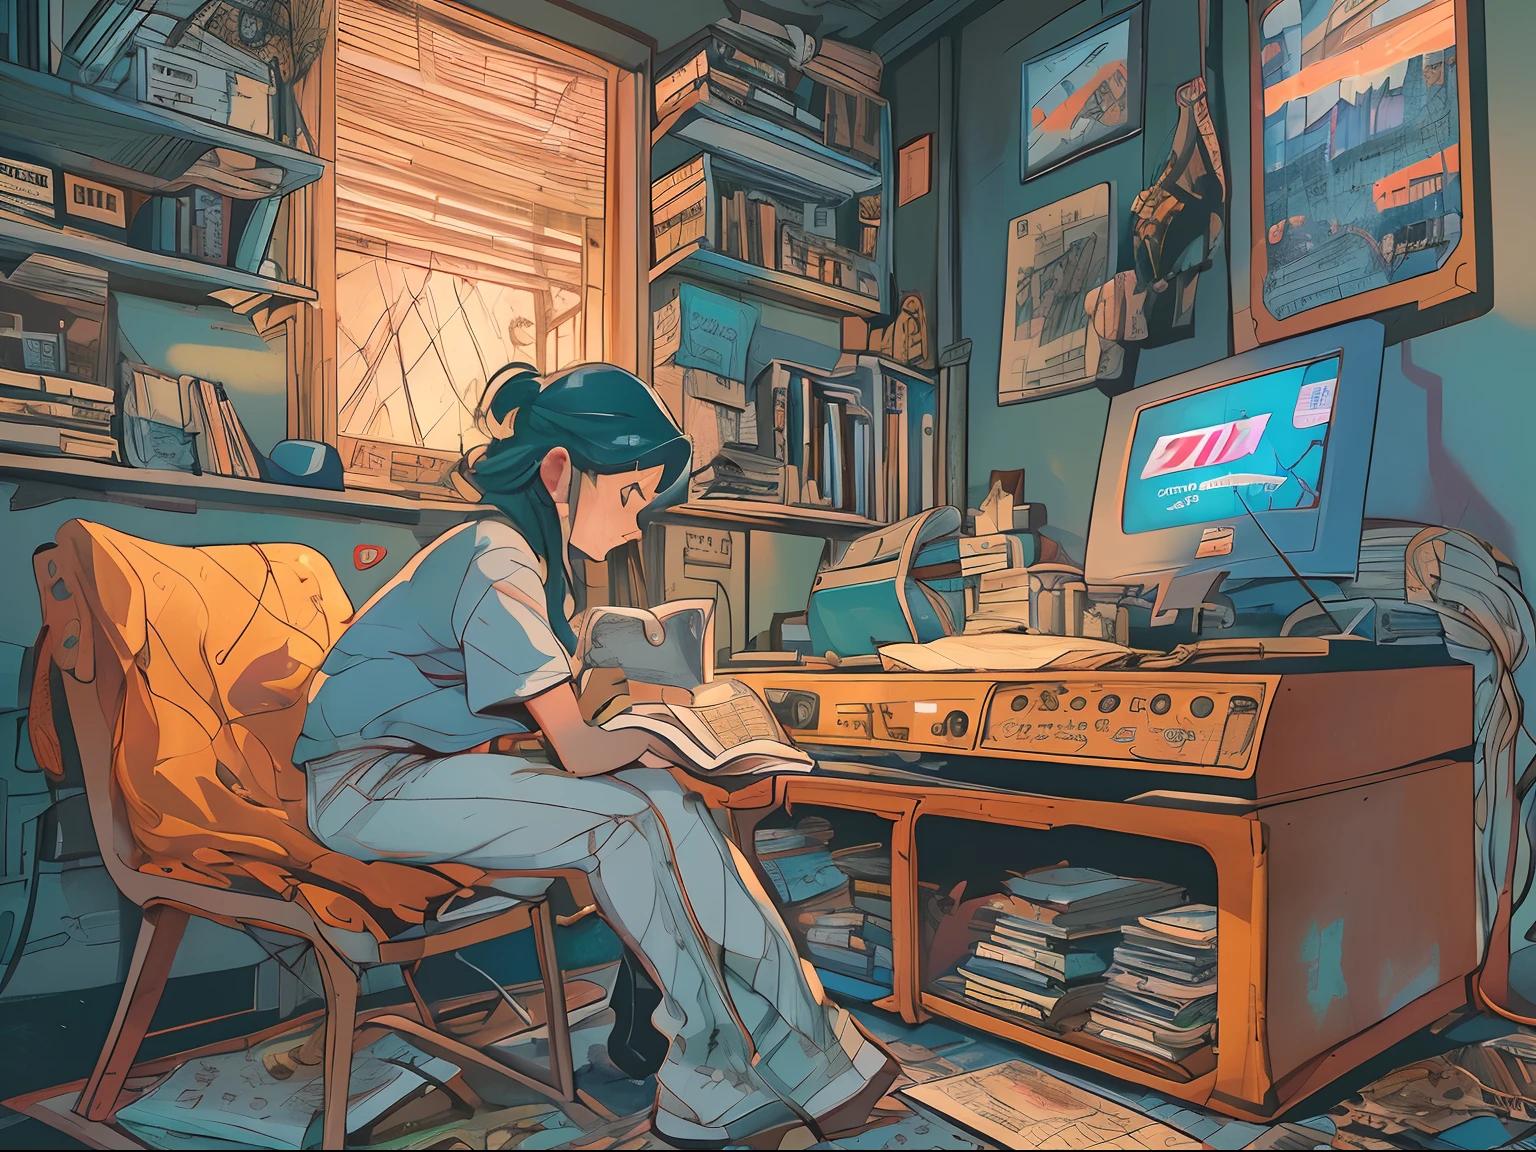 (ศูนย์), คนหนึ่งกำลังศึกษาอยู่บนโต๊ะในห้องของเธอ, อ่านหนังสือ, โดยใช้ชุดหูฟัง, วัสดุภายในปี 1987, แสงกลางคืน, ฝนตกข้างนอก,ธีมสีอะนาล็อก, โล-ฟี่ ฮิปฮอป , ย้อนยุค, แบน, 2D , การออกแบบที่เรียบง่าย, ลดความซับซ้อนของภาพลายเส้น, การวาดภาพด้วยหมึกดิจิทัล, เส้นหมึกขนาดใหญ่, สีน้ำ, คอร์ goauche, สไตล์สตูดิโอจิบลิ, สีที่น่าทึ่ง, ออกไปข้างนอก, ซินธ์เวฟ, Arte ศูนย์,สไตล์ยุค 90,เนื้อเก่า, แอมพลิจูด,บรรยากาศยุค 90,